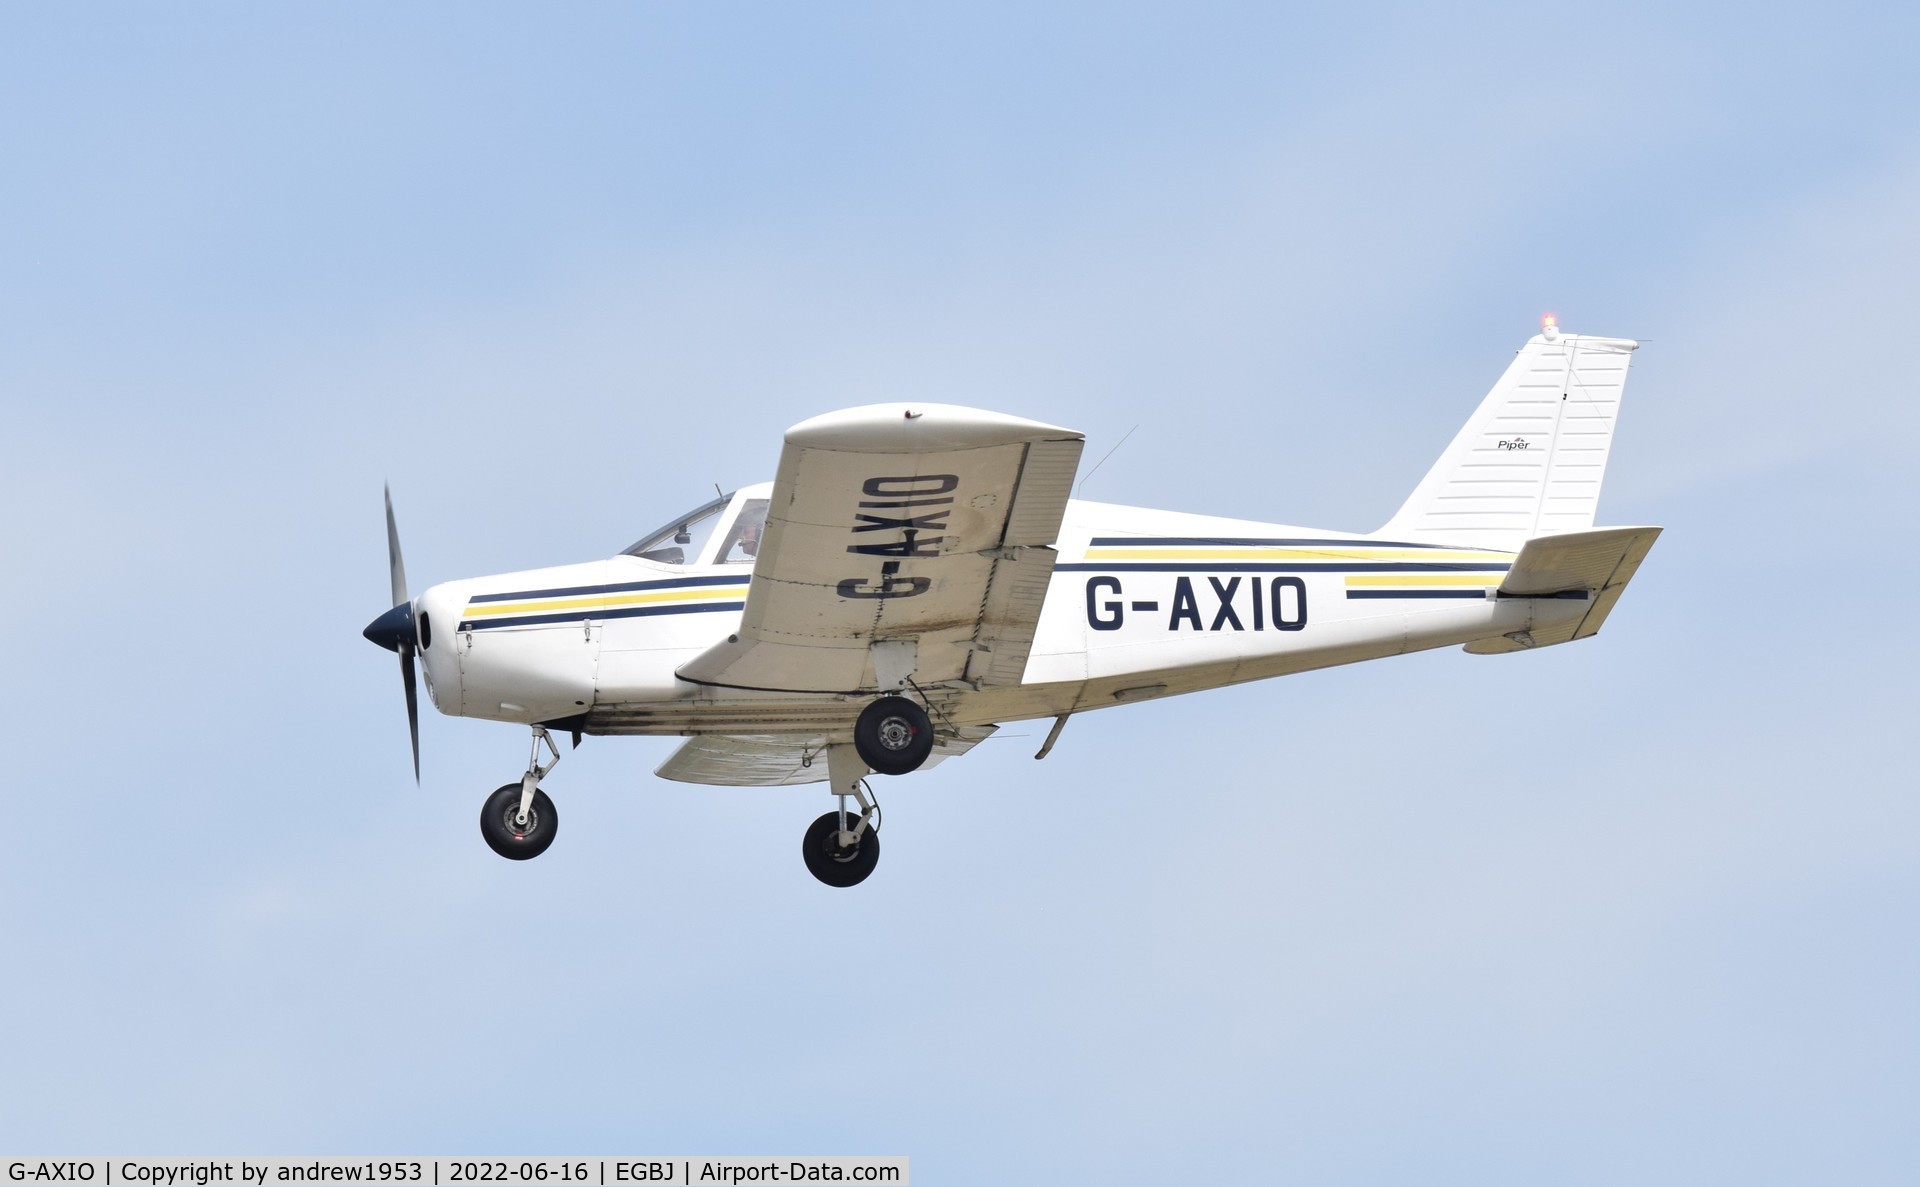 G-AXIO, 1969 Piper PA-28-140 Cherokee C/N 28-25764, G-AXIO at Gloucestershire Airport.